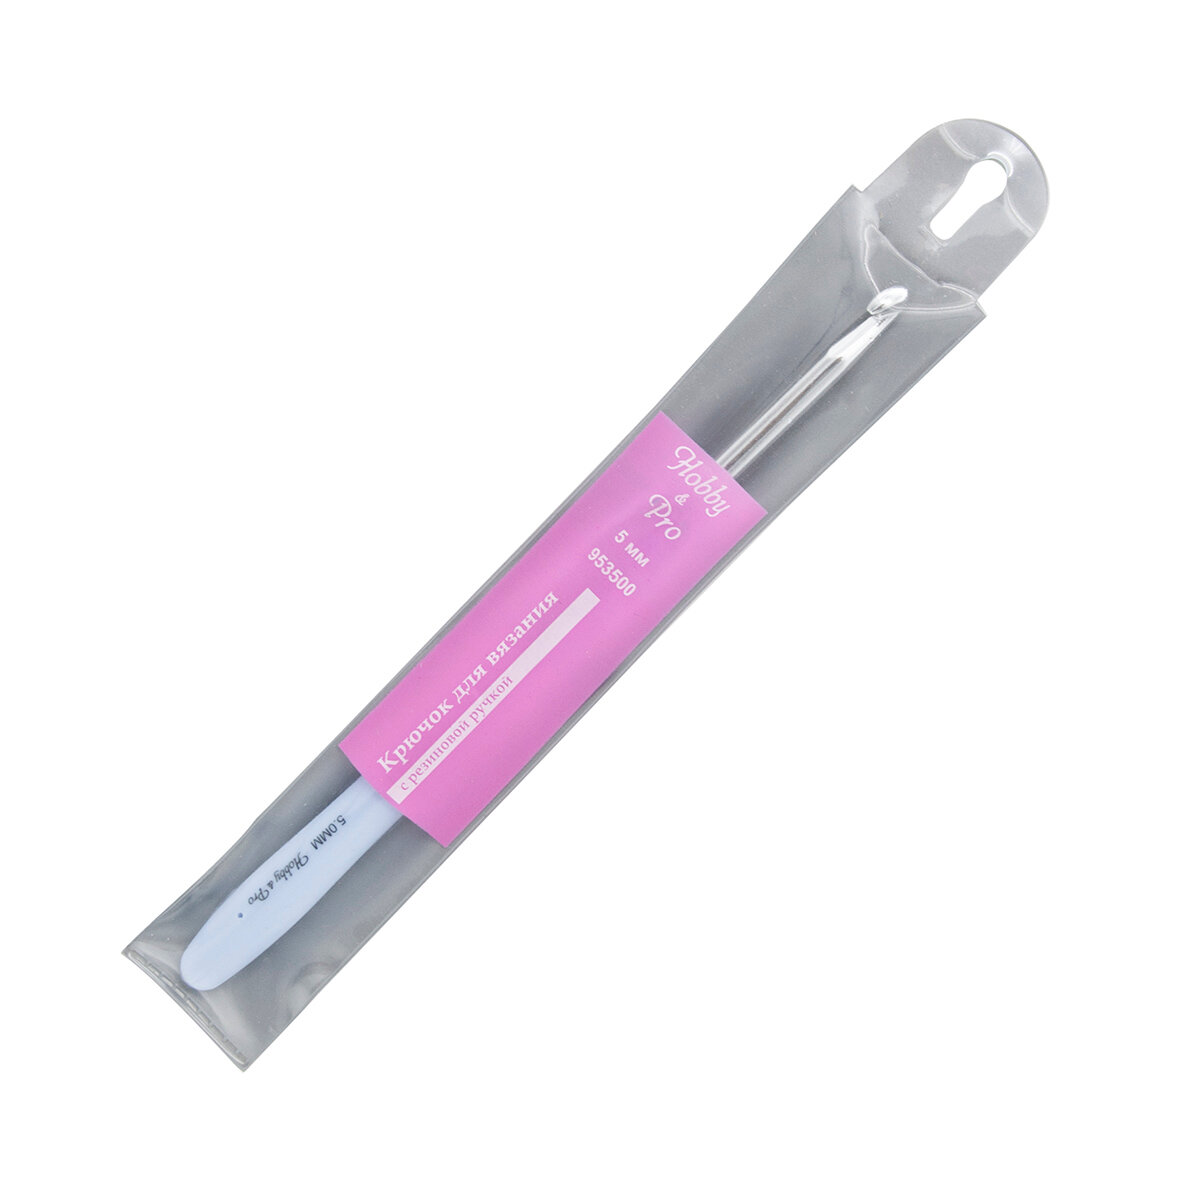 Крючок для вязания, диаметр 5 мм с резиновой ручкой с выемкой для пальца, 16 см, Hobby&Pro